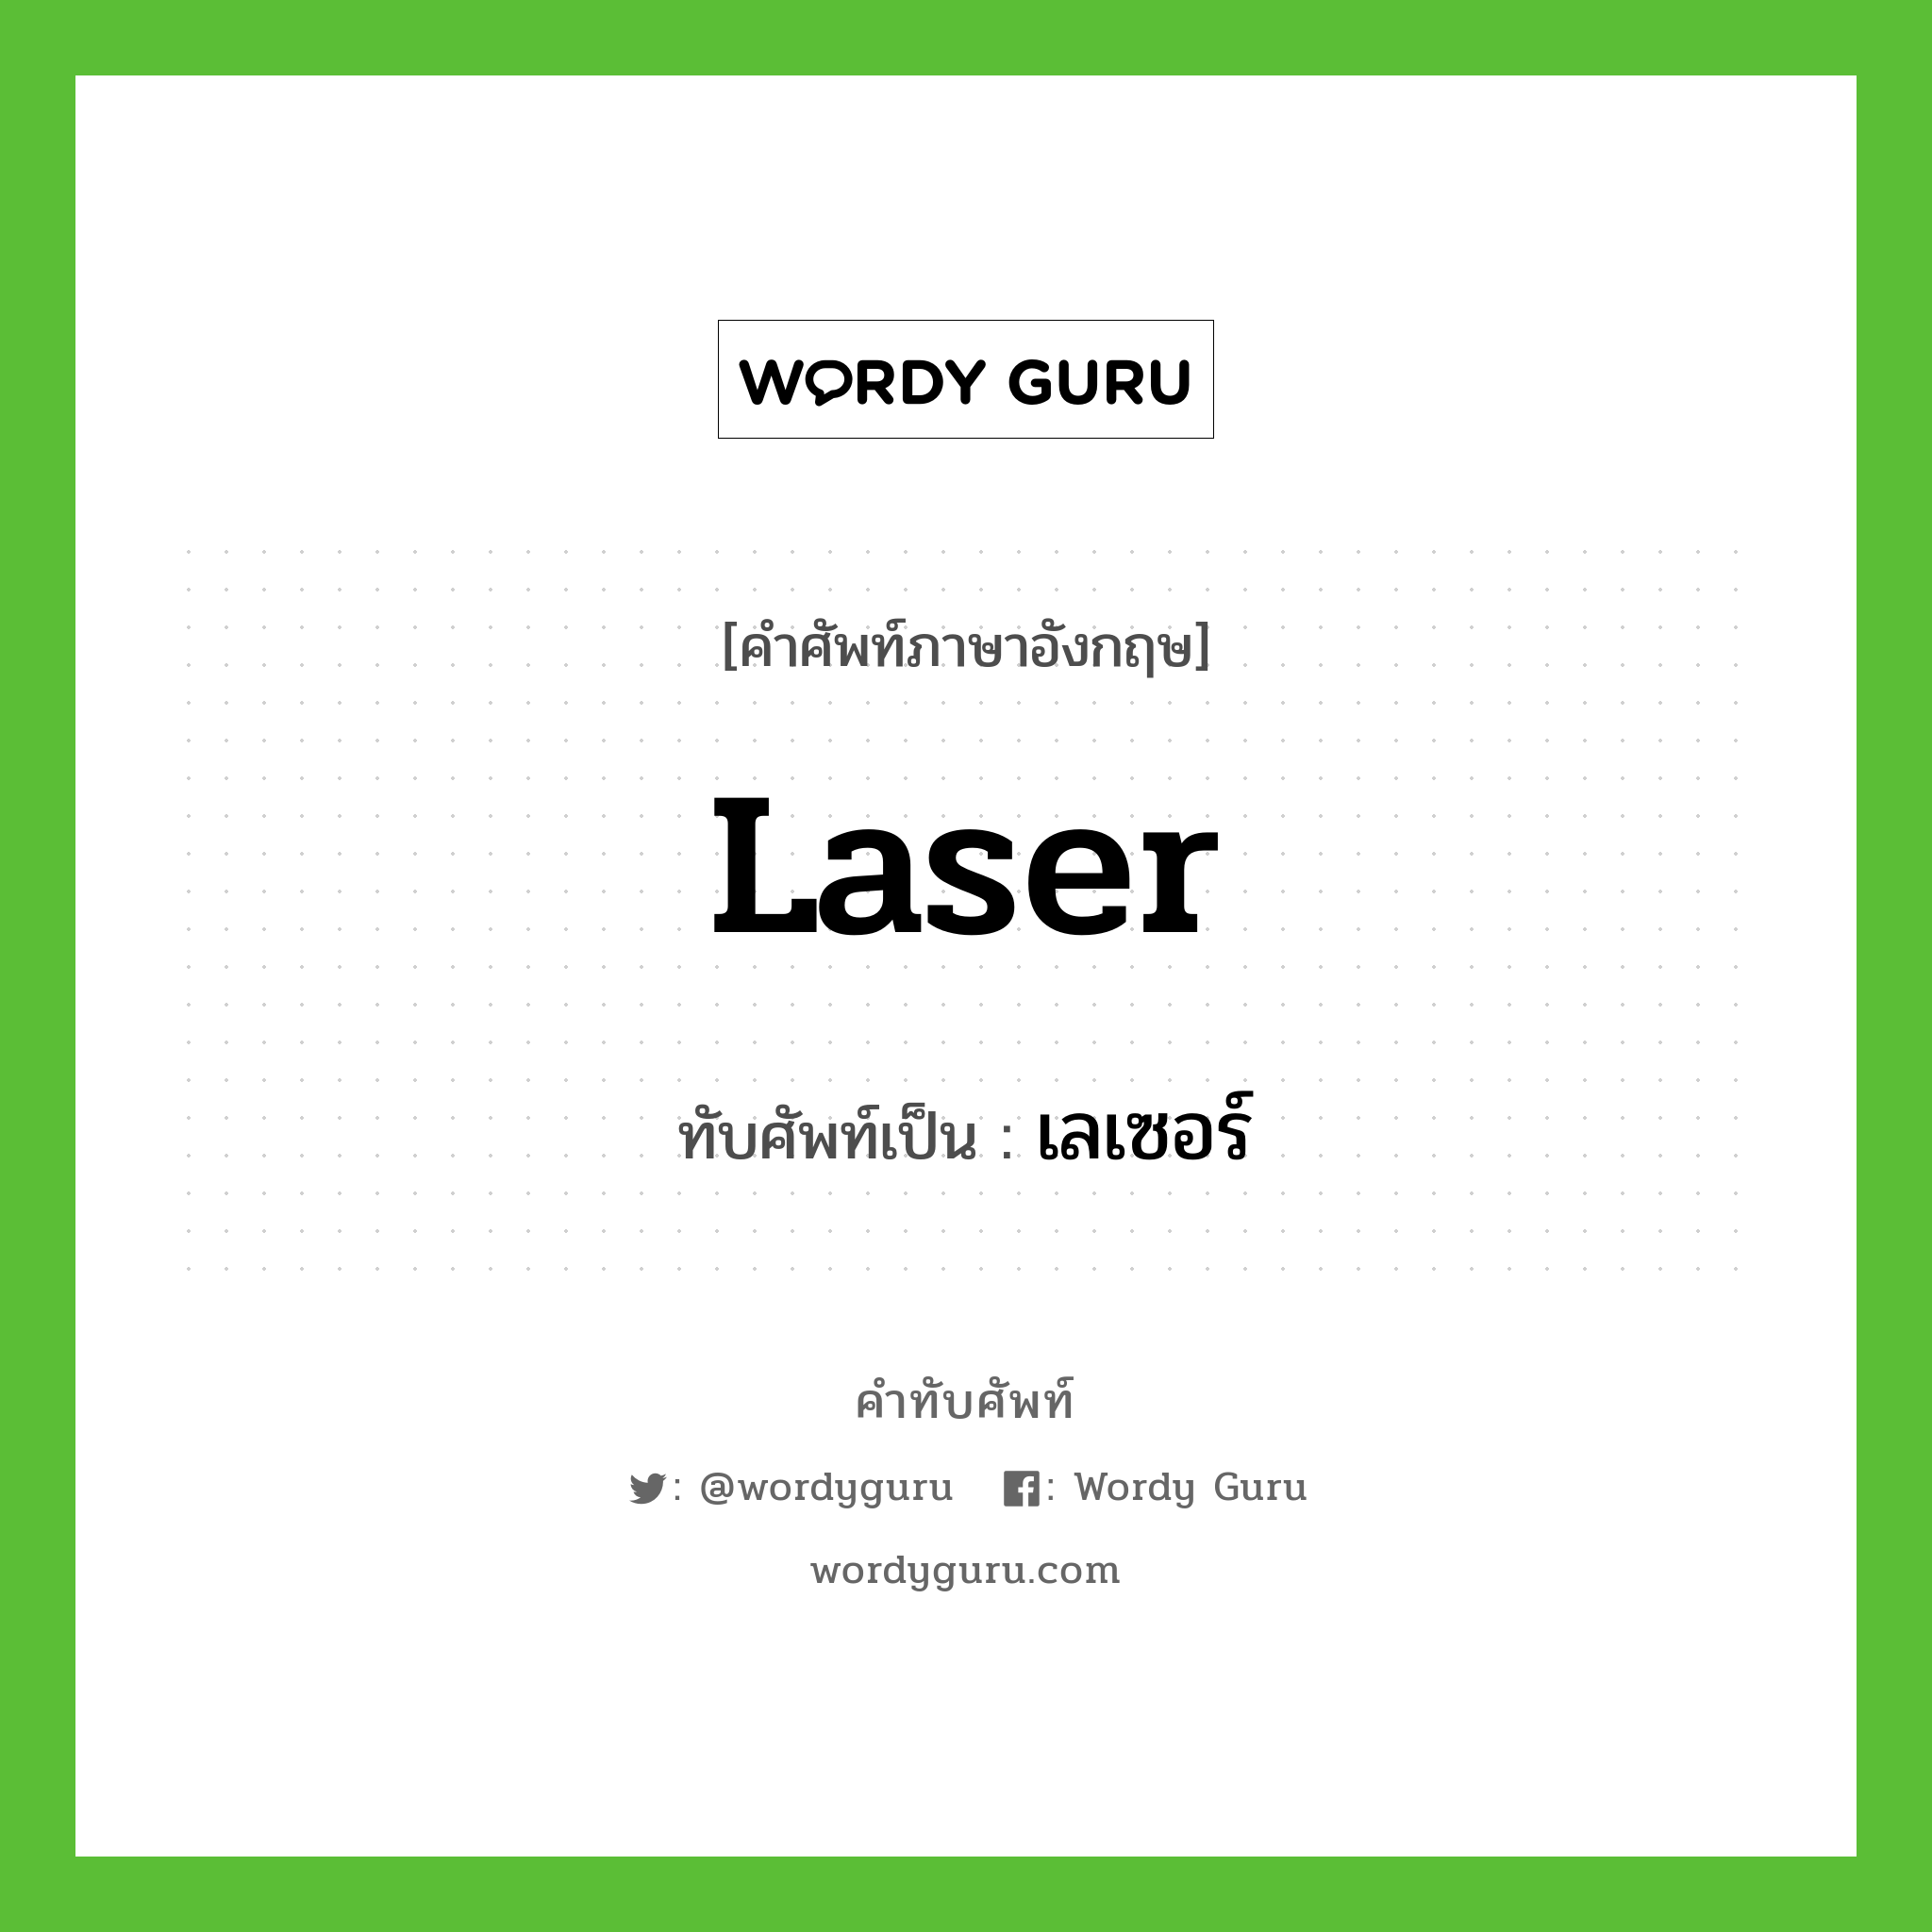 laser เขียนเป็นคำไทยว่าอะไร?, คำศัพท์ภาษาอังกฤษ laser ทับศัพท์เป็น เลเซอร์